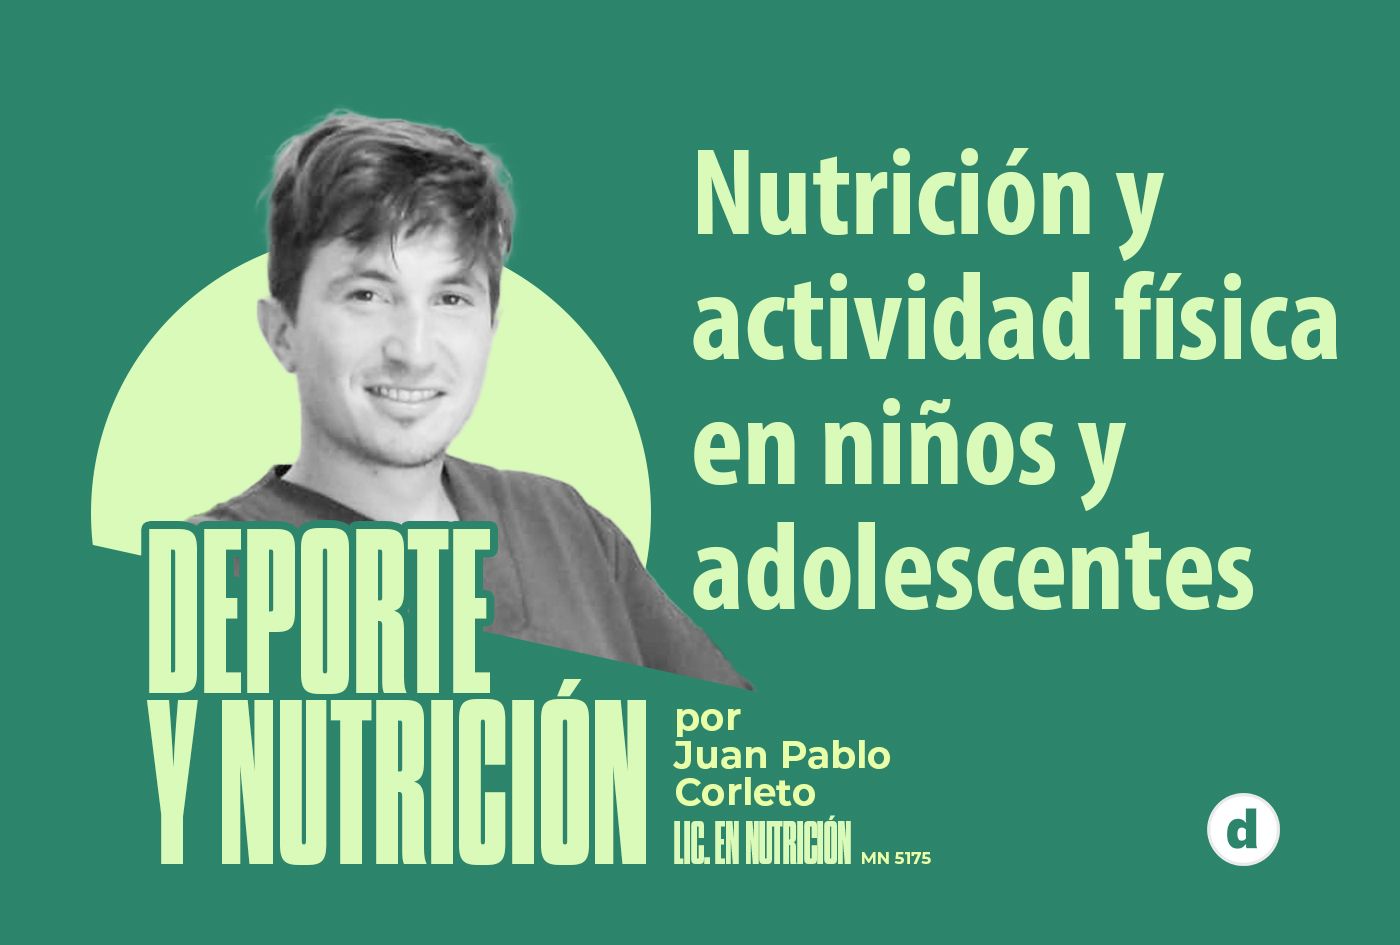 La columna del nutricionista Juan Pablo Corleto: “Nutrición y actividad física en niños y adolescentes”